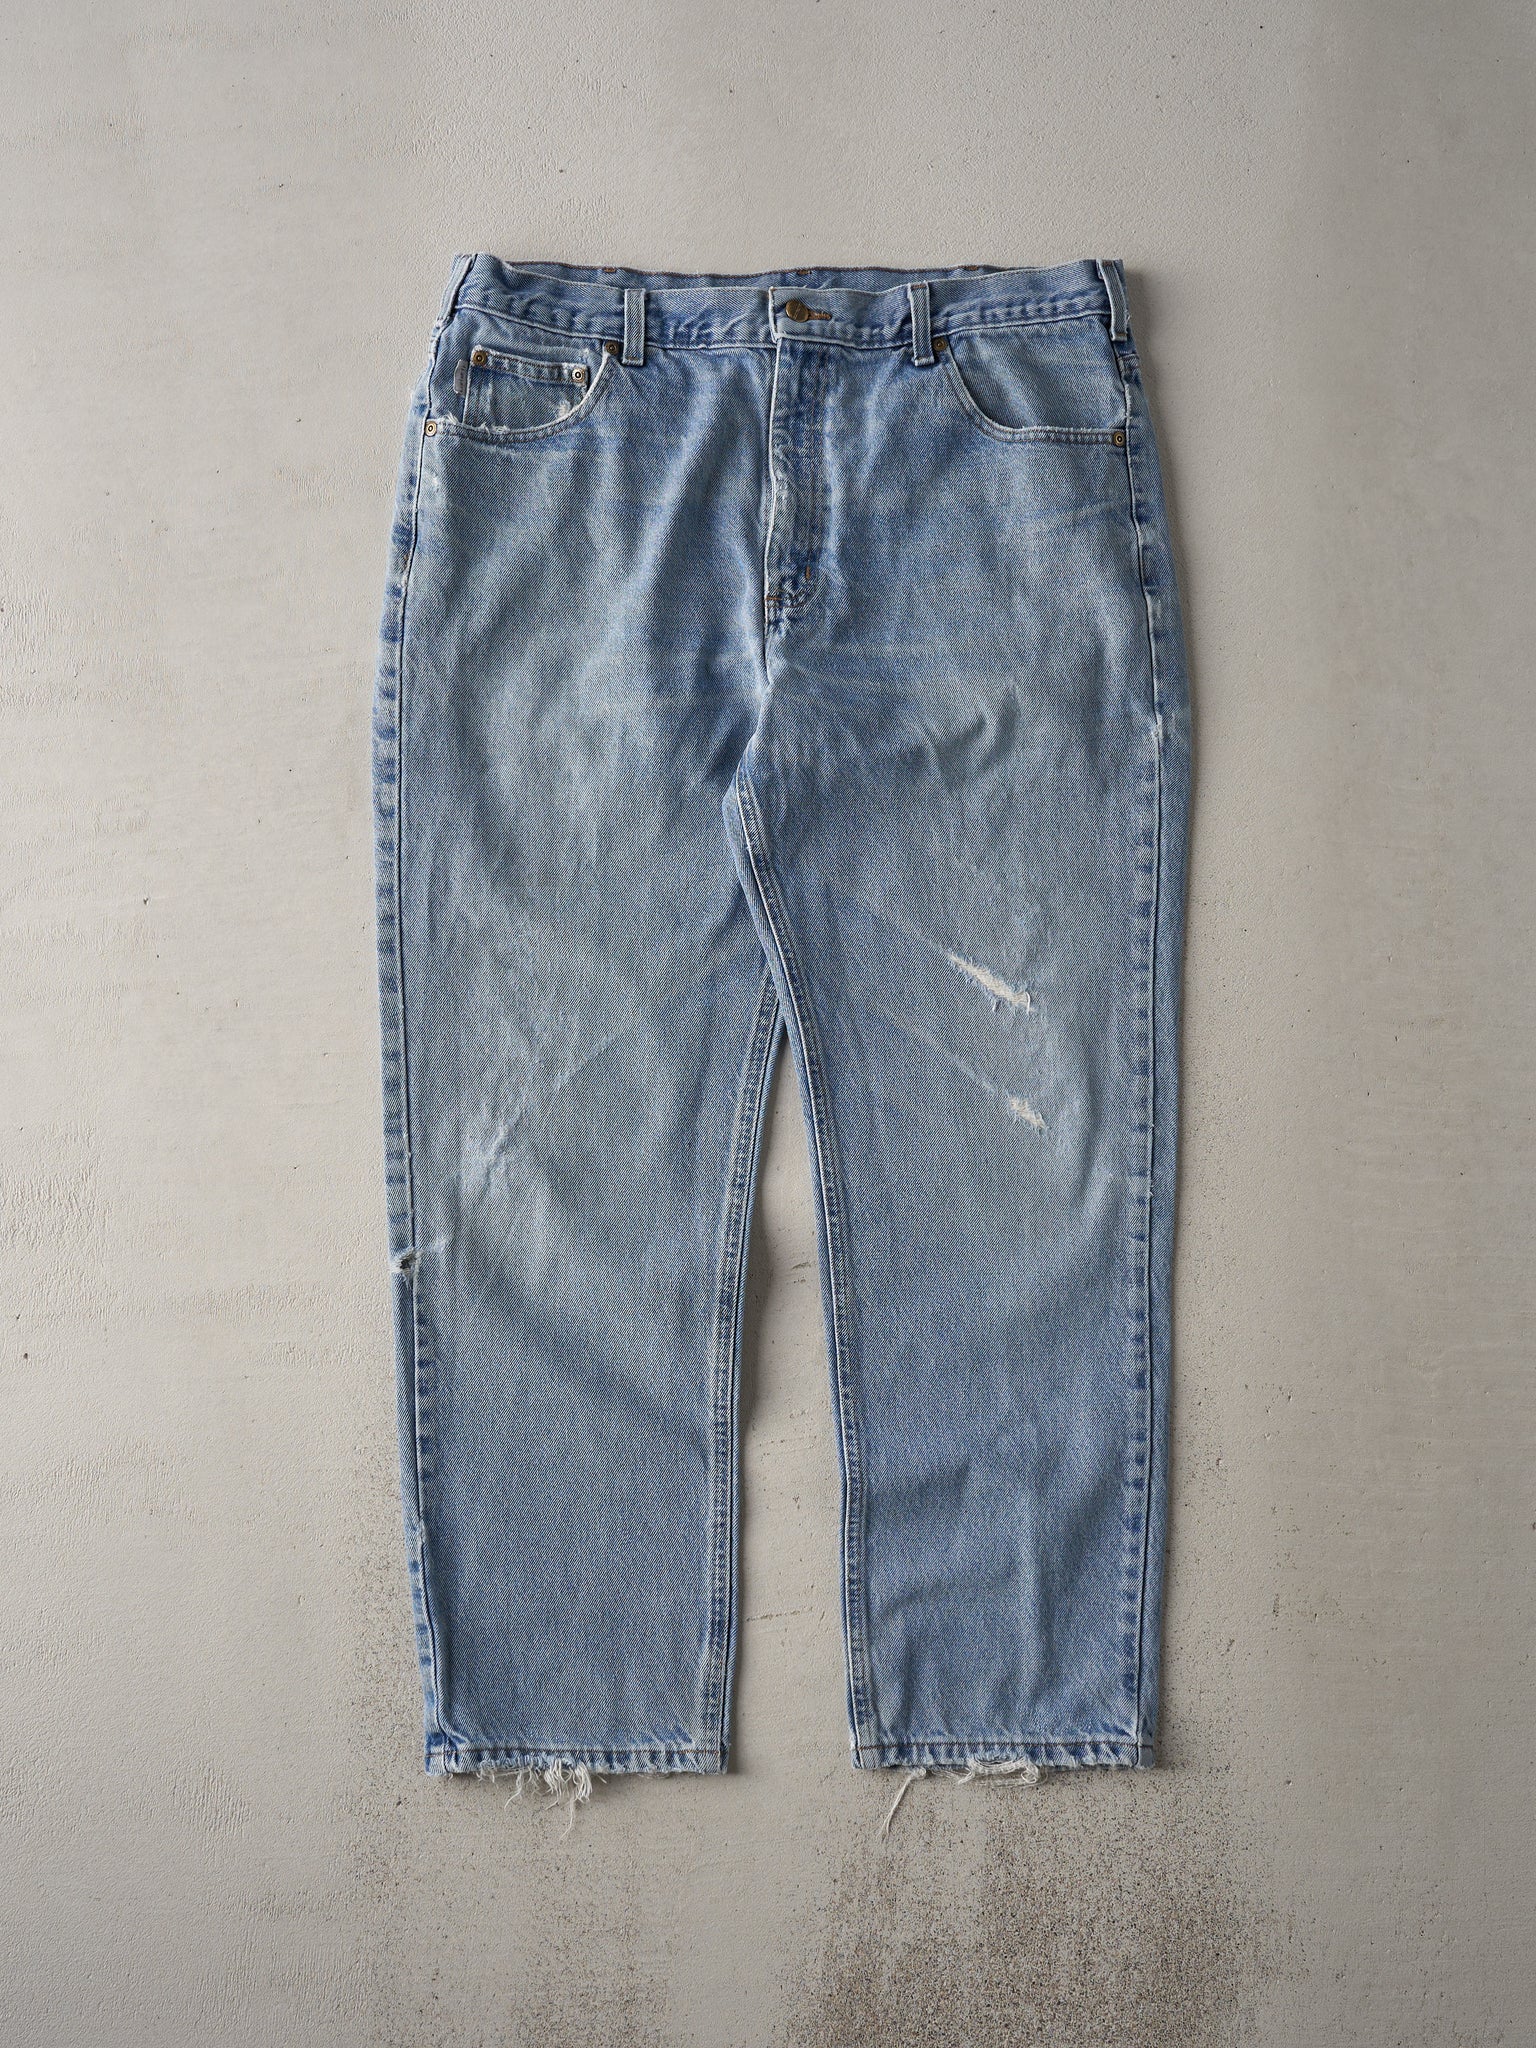 Vintage 90s Washed Blue Carhartt Denim Jeans (37x29)